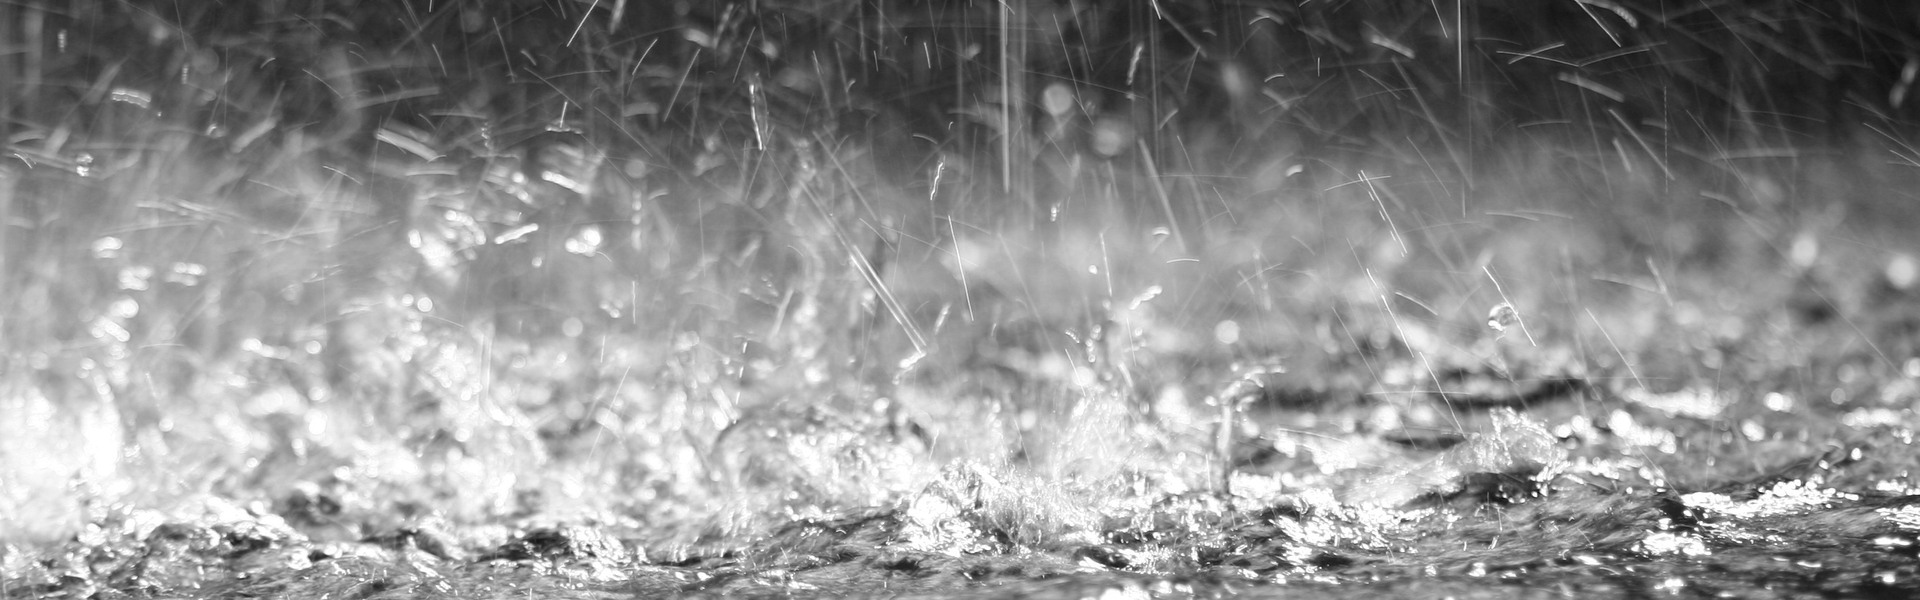 Närbild av vattendroppar när det regnar